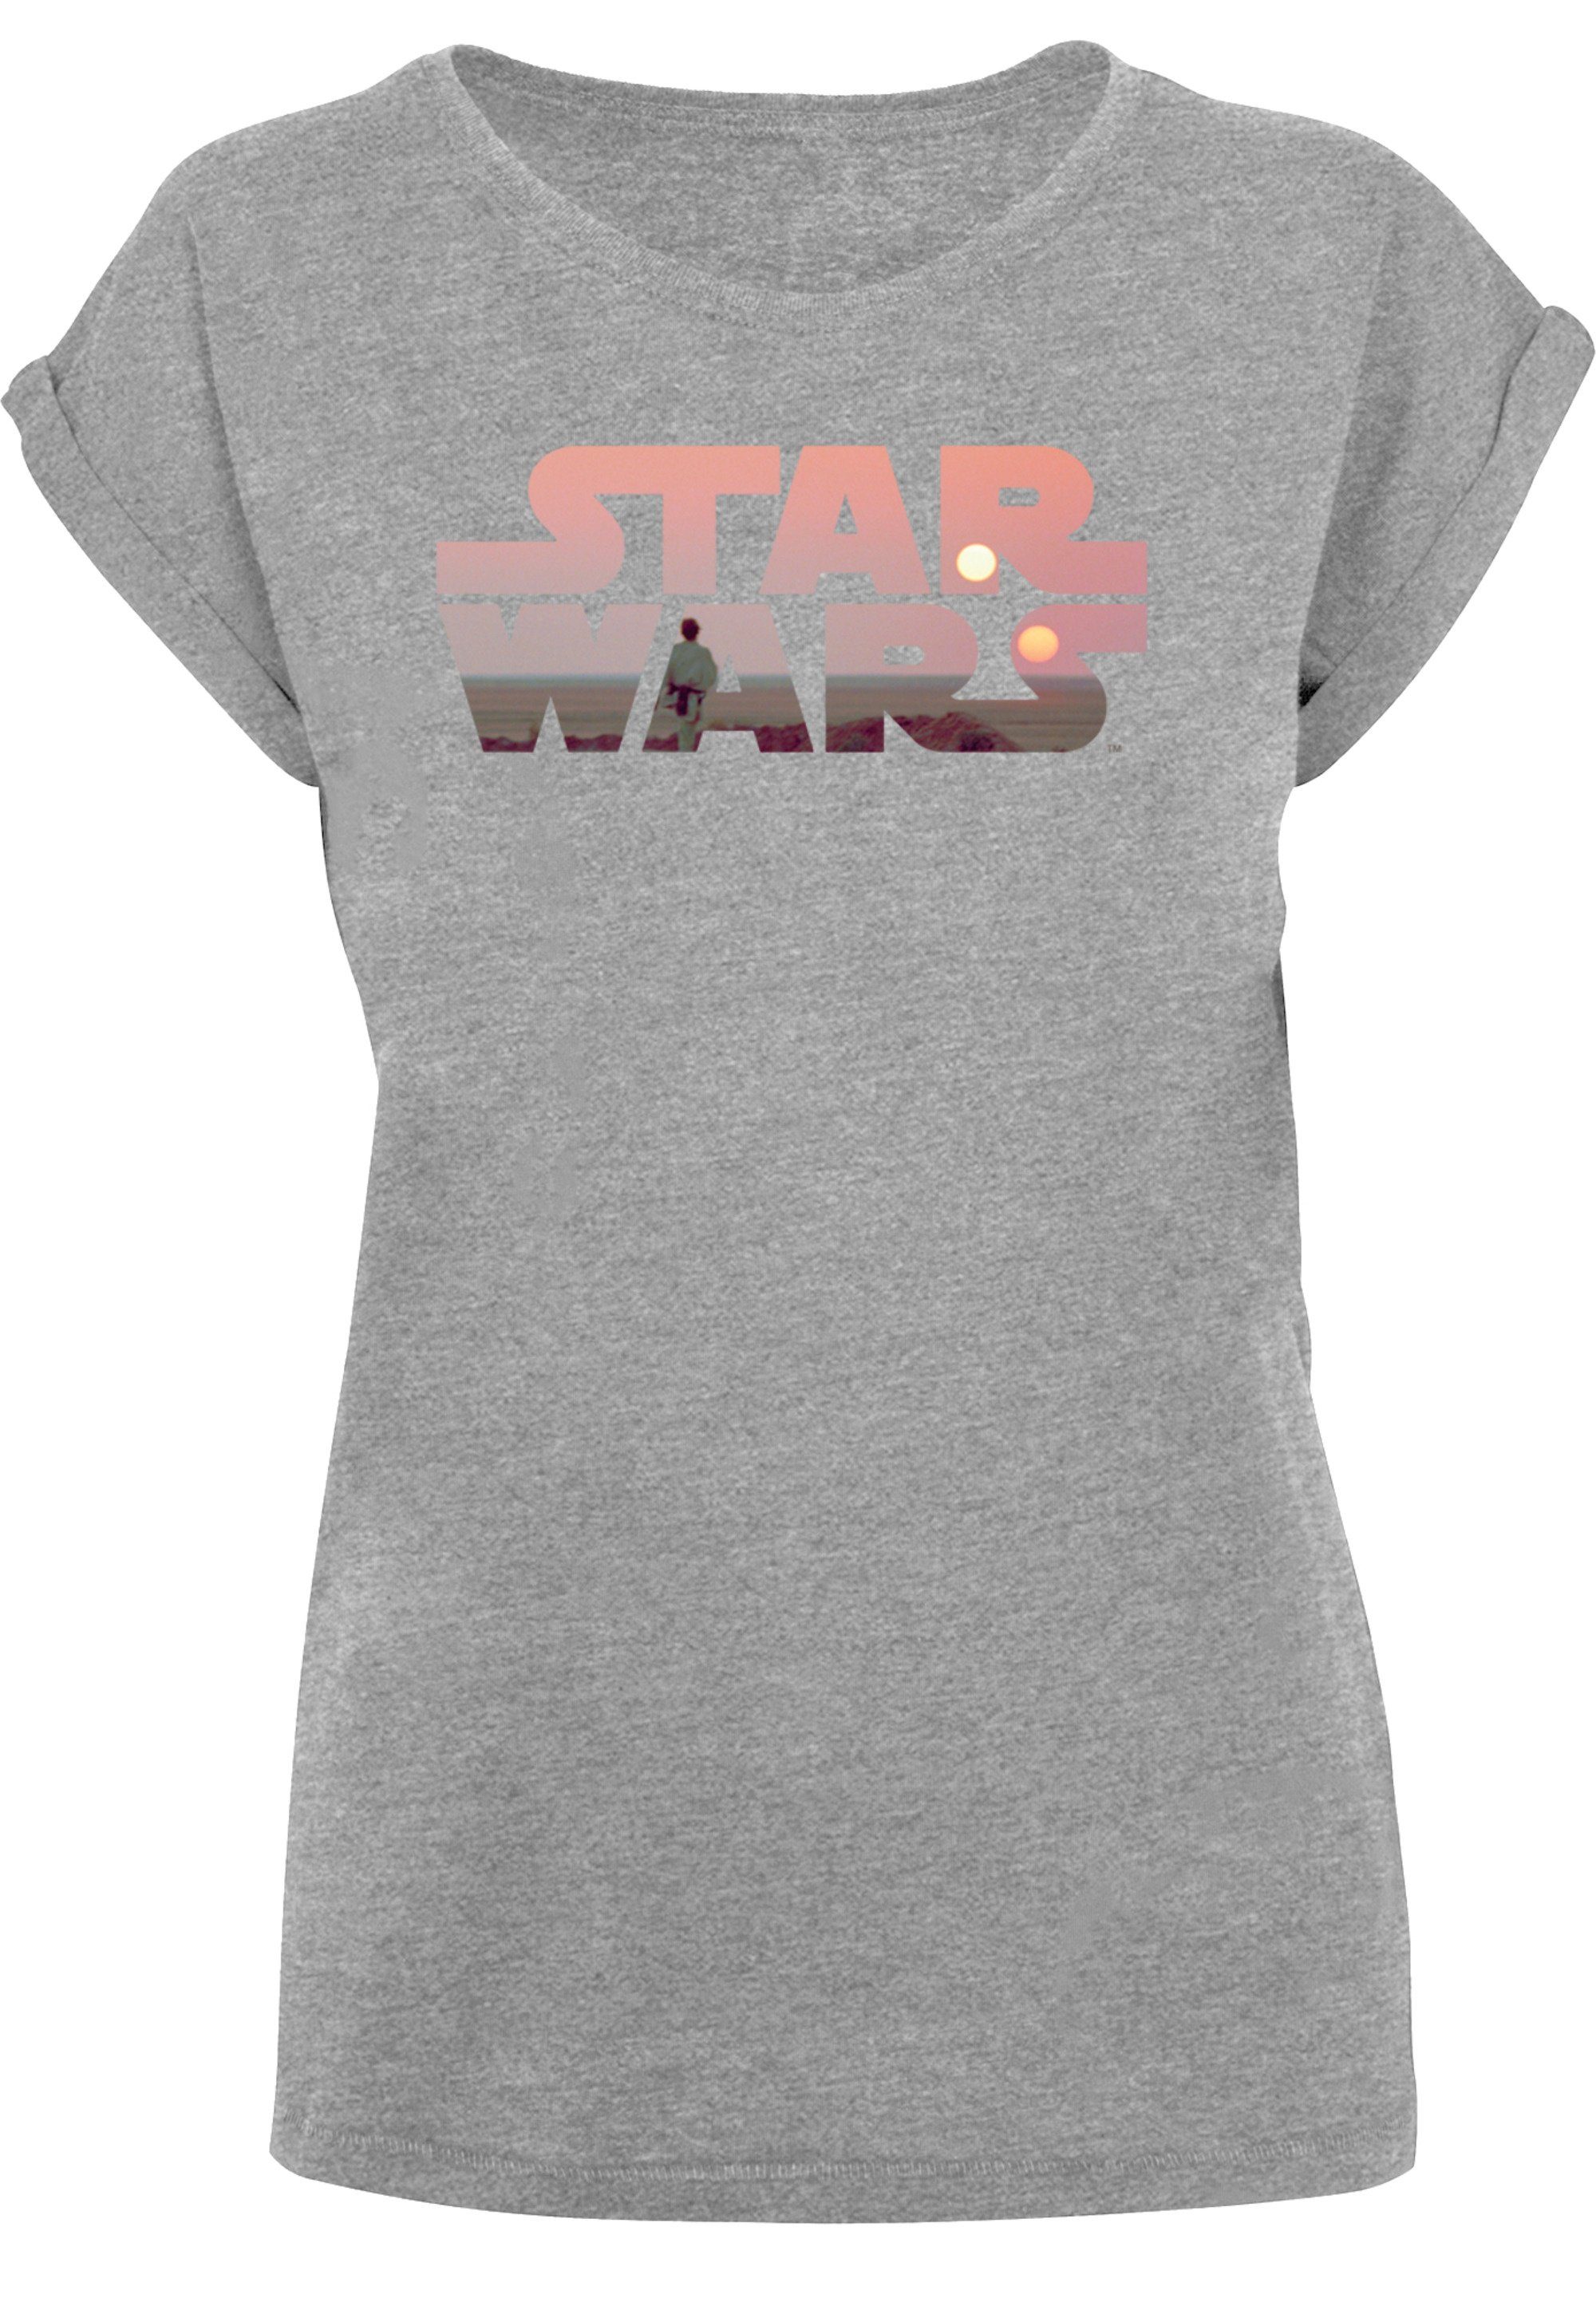 Logo Wars Offiziell T-Shirt T-Shirt Tatooine Star Wars Print, lizenziertes F4NT4STIC Star